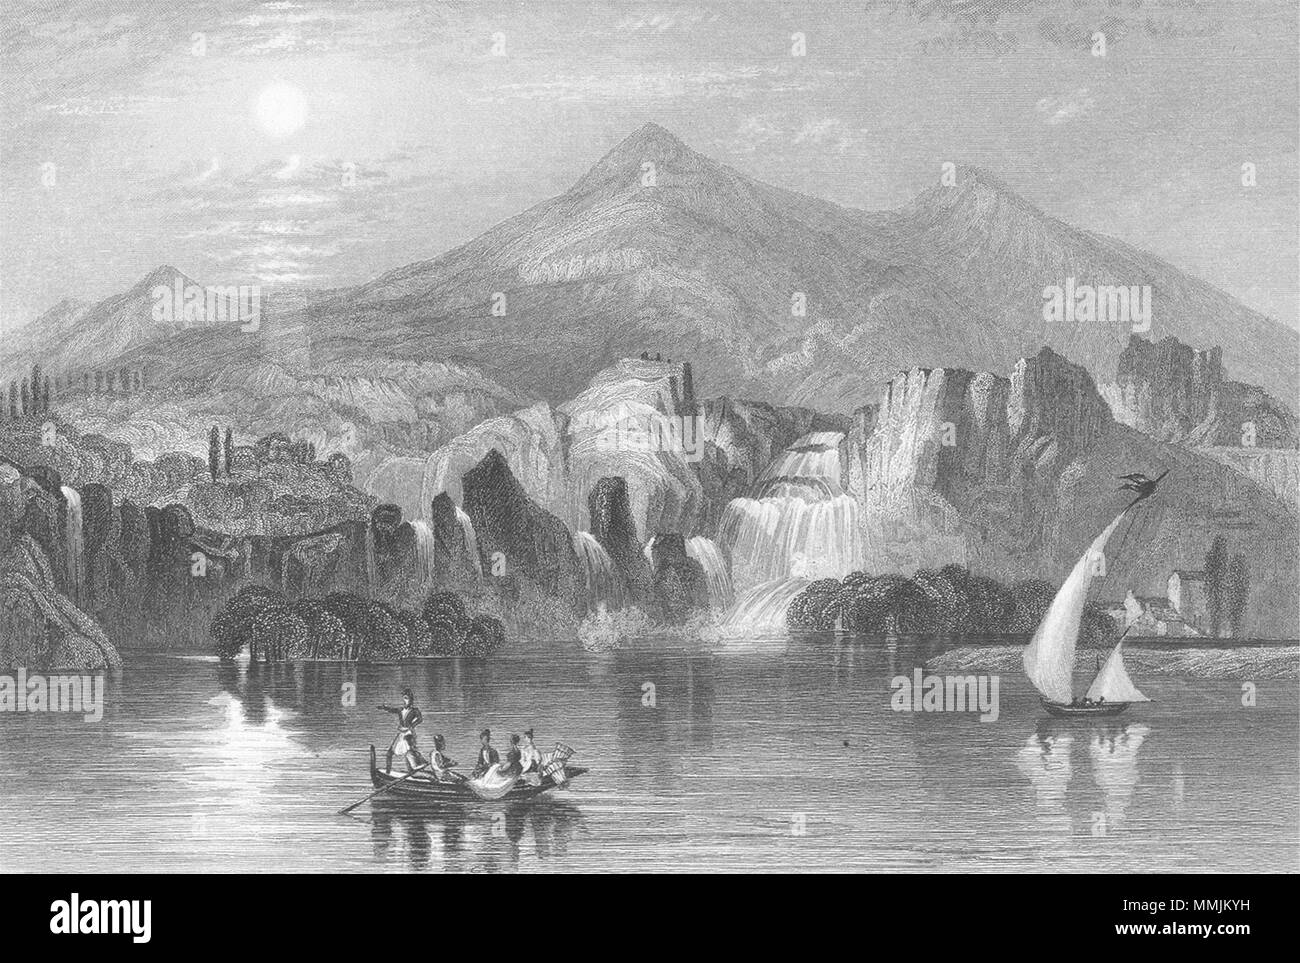 La Croazia. Cascata, Krka. Illyria. Sargent 1854 antica immagine di stampa Foto Stock